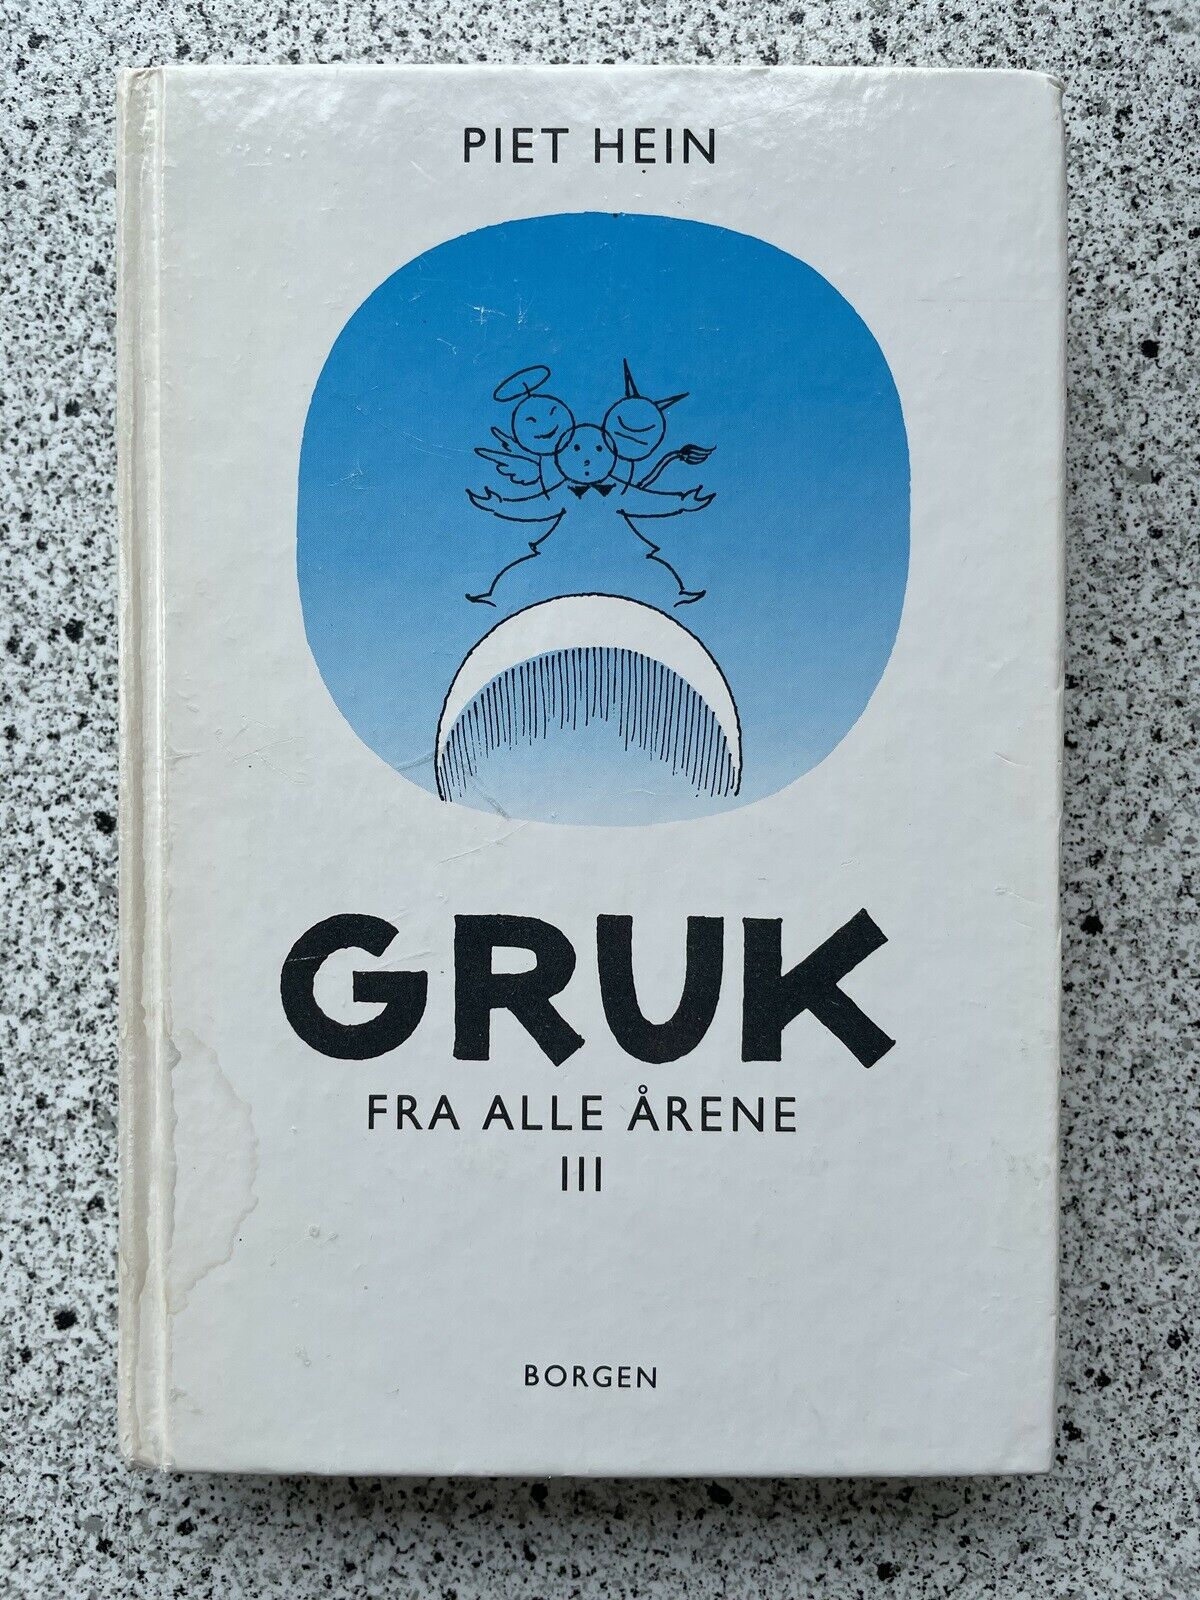 GRUK fra alle III, Piet Hein, genre: digte dba.dk – Køb og Salg af Nyt Brugt